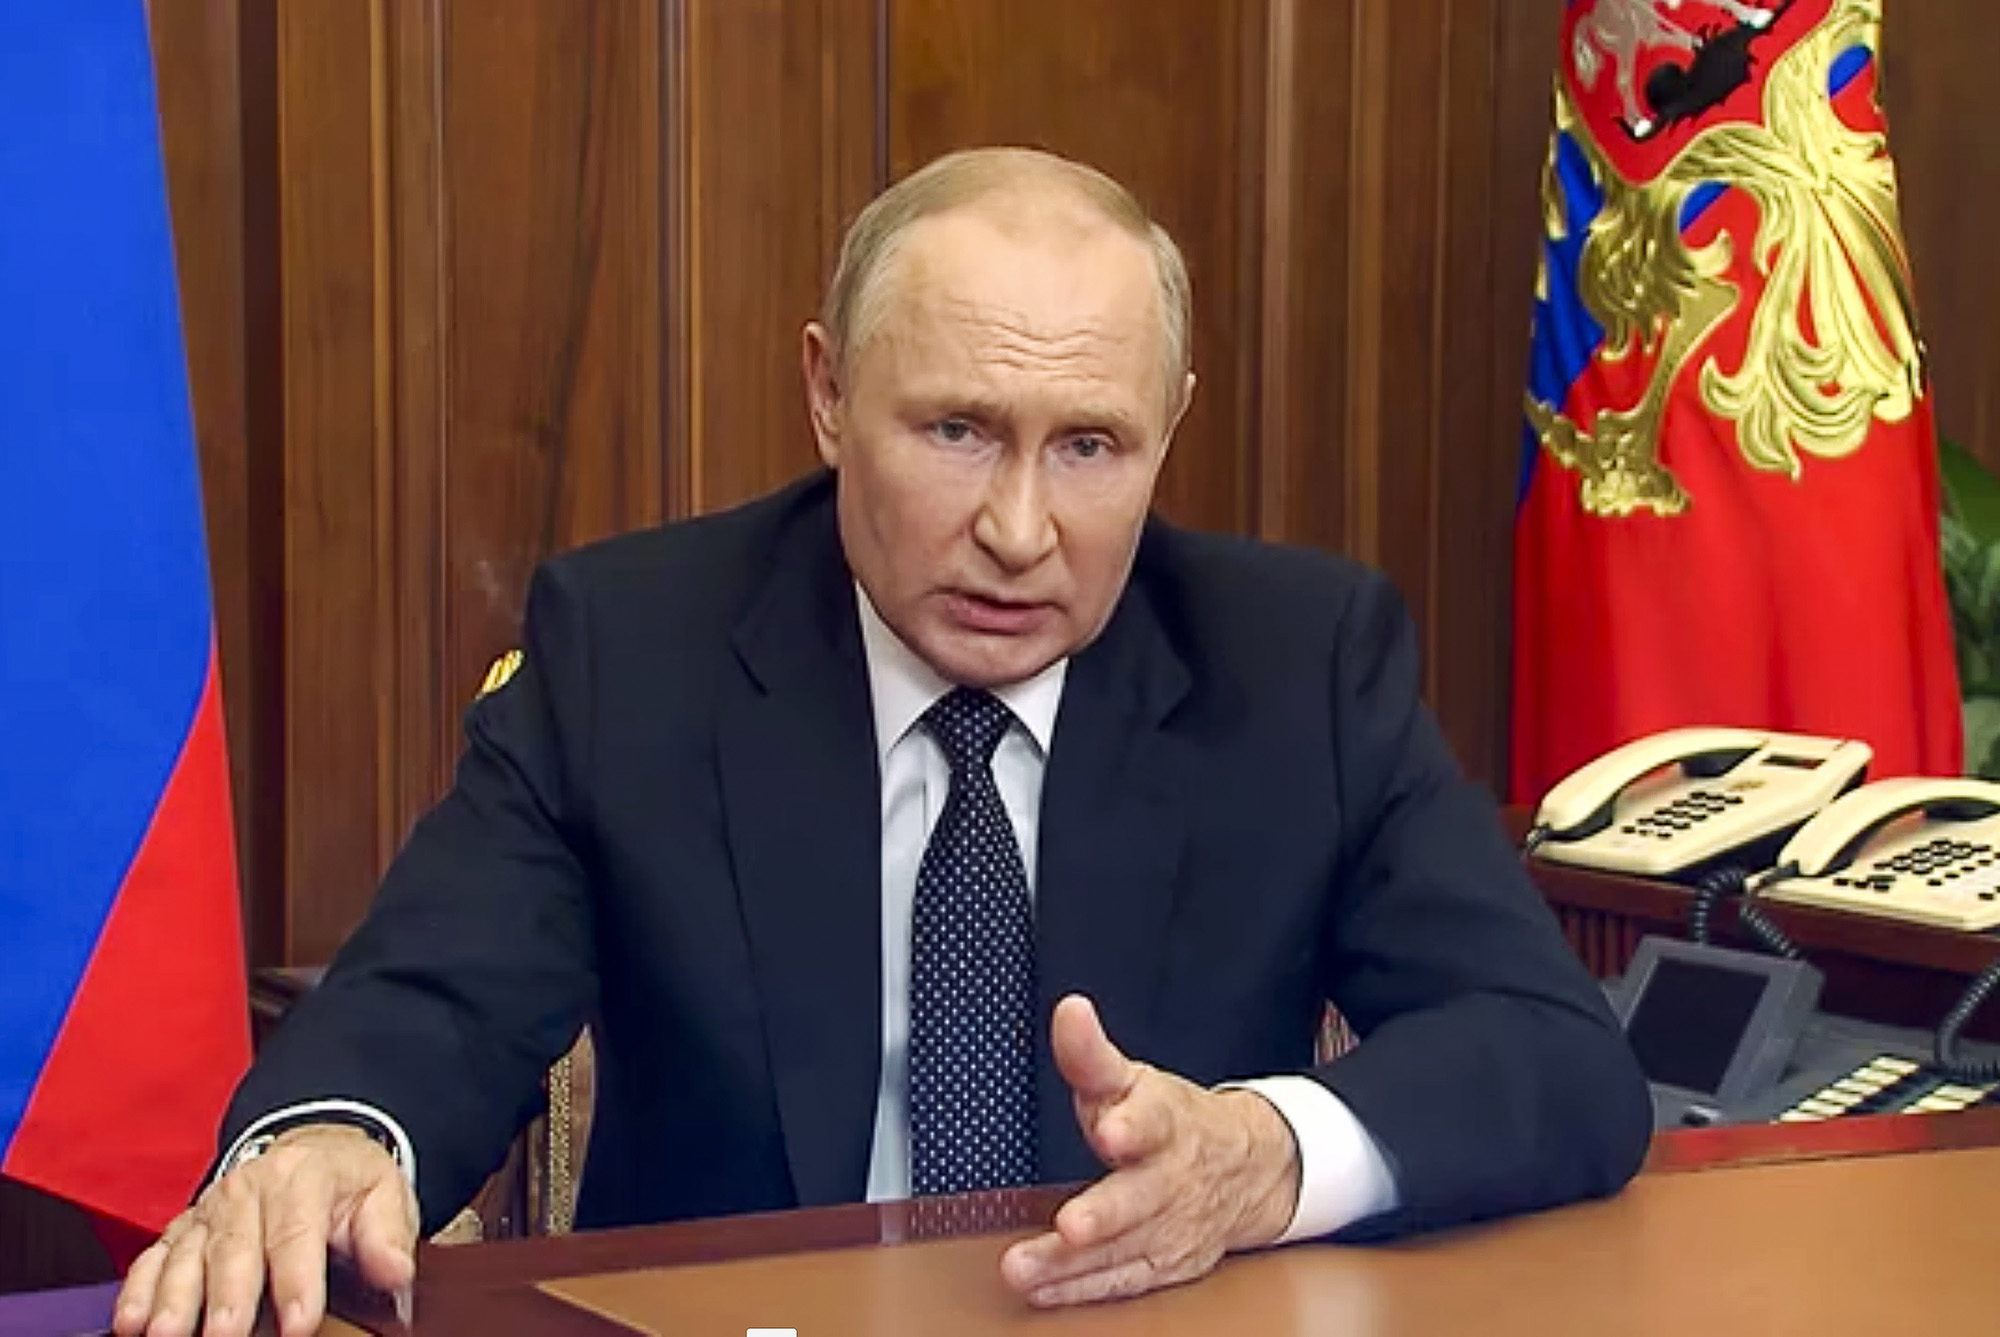 Rusya Cumhurbaşkanlığı Basın Servisi tarafından yayınlanan videodan yapılan bu görüntüde, Rusya Devlet Başkanı Vladimir Putin 21 Eylül'de Rusya'nın Moskova kentinde ulusa sesleniyor.